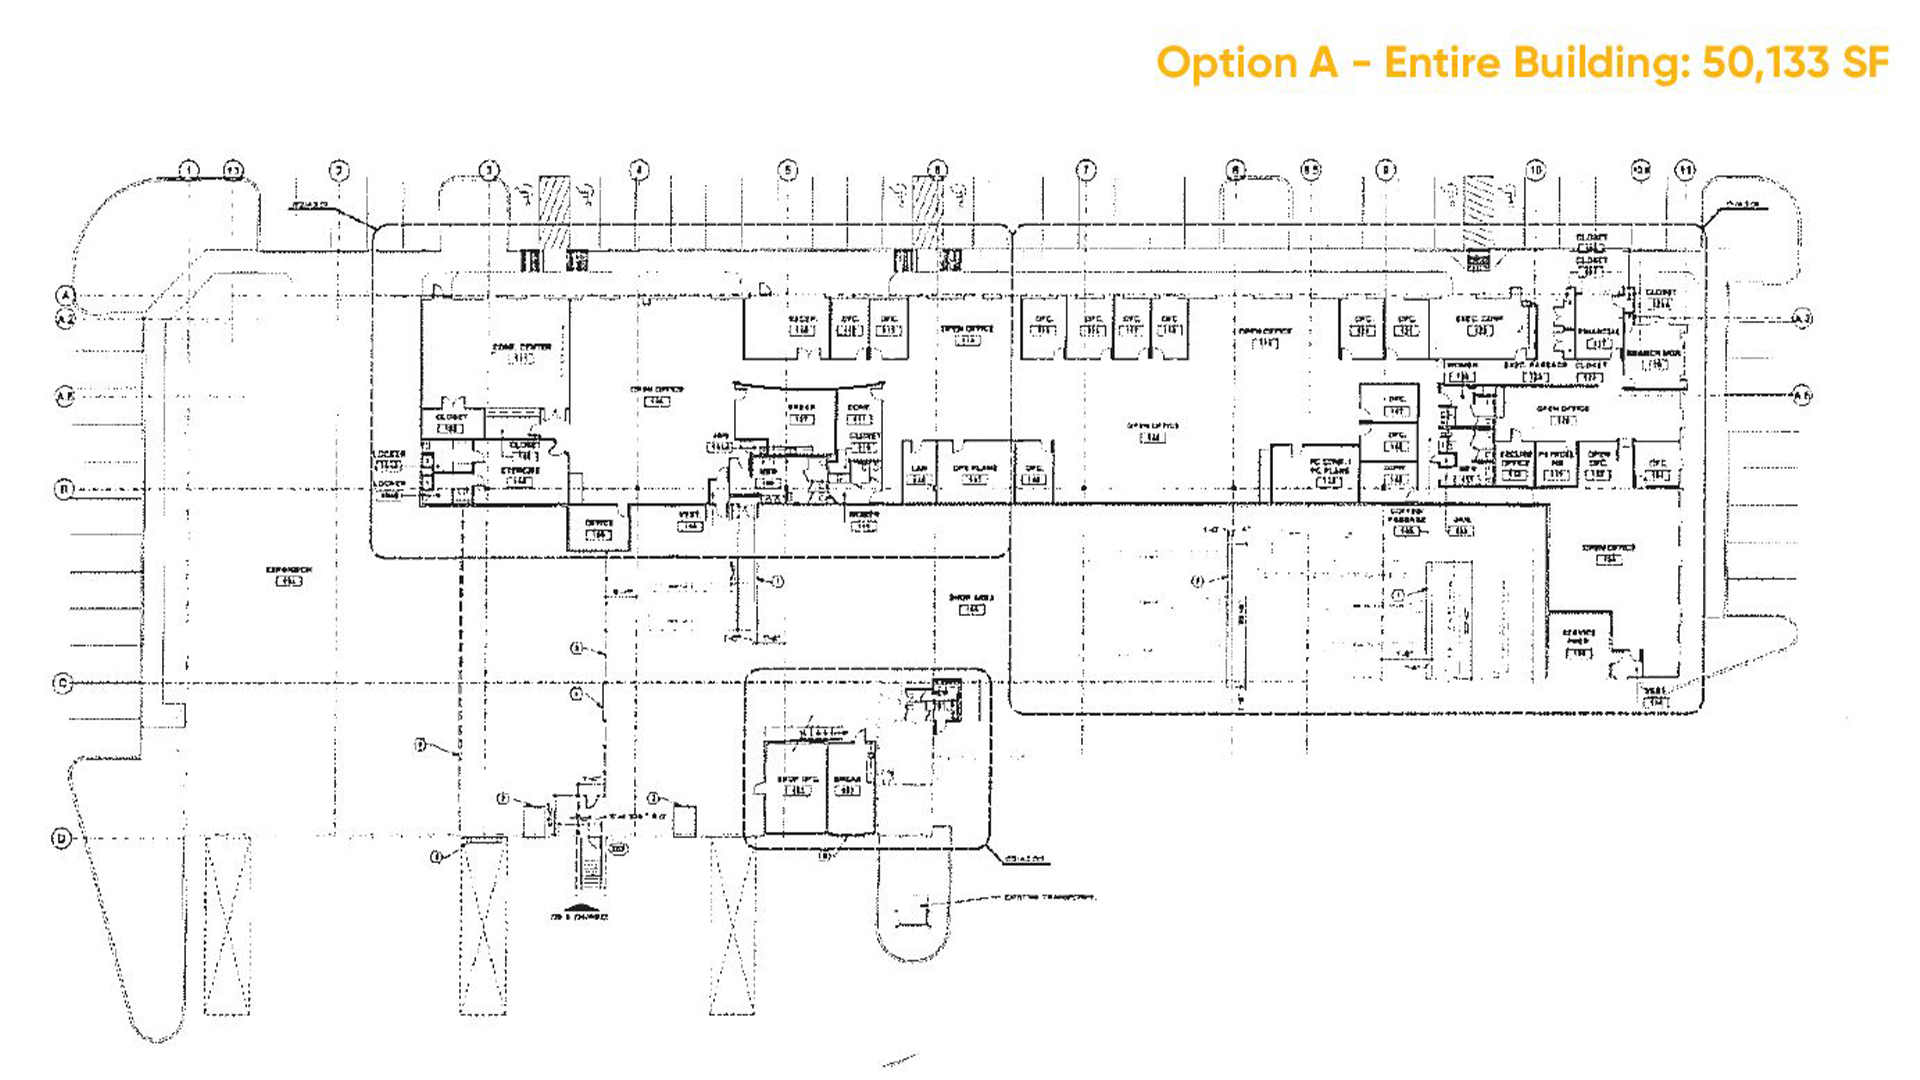 13261 Mid Atlantic Blvd - Floor Plan - Option A